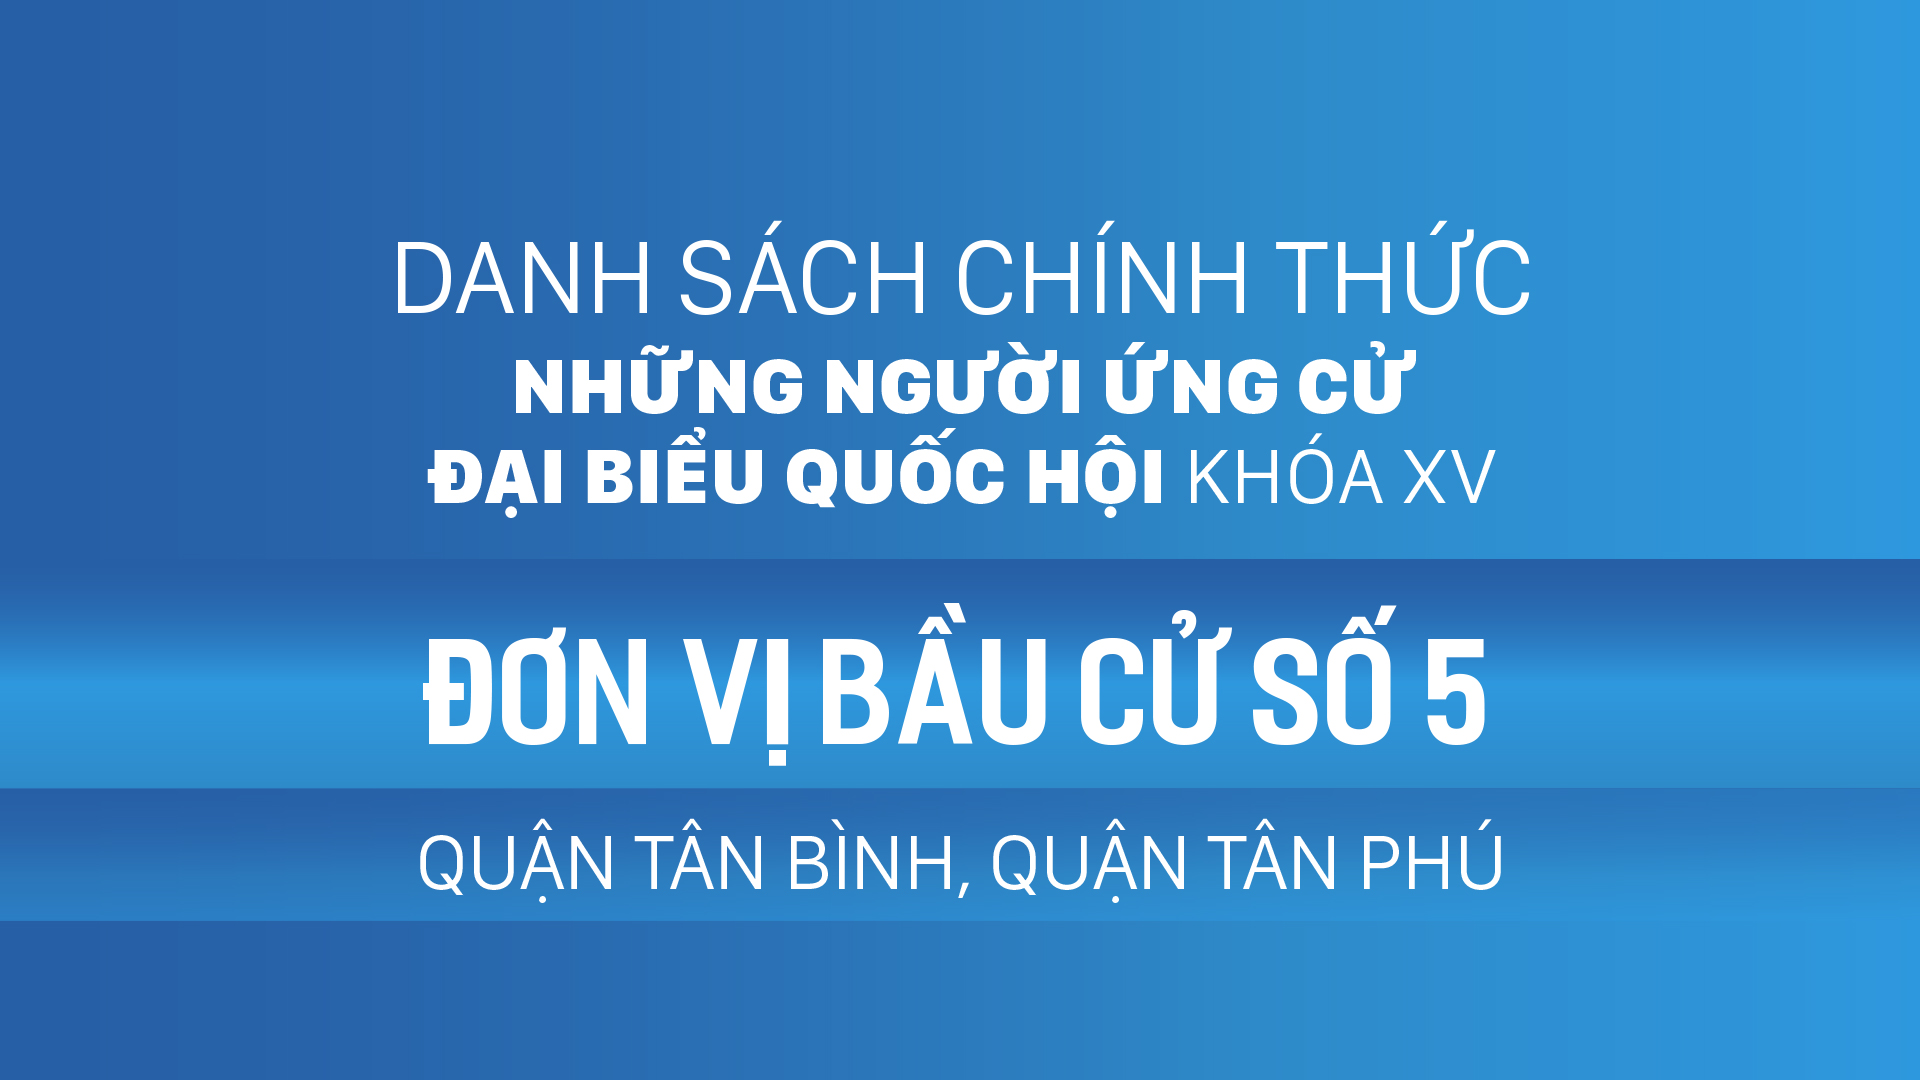 Đơn vị bầu cử số 5 (quận Tân Bình, quận Tân Phú)